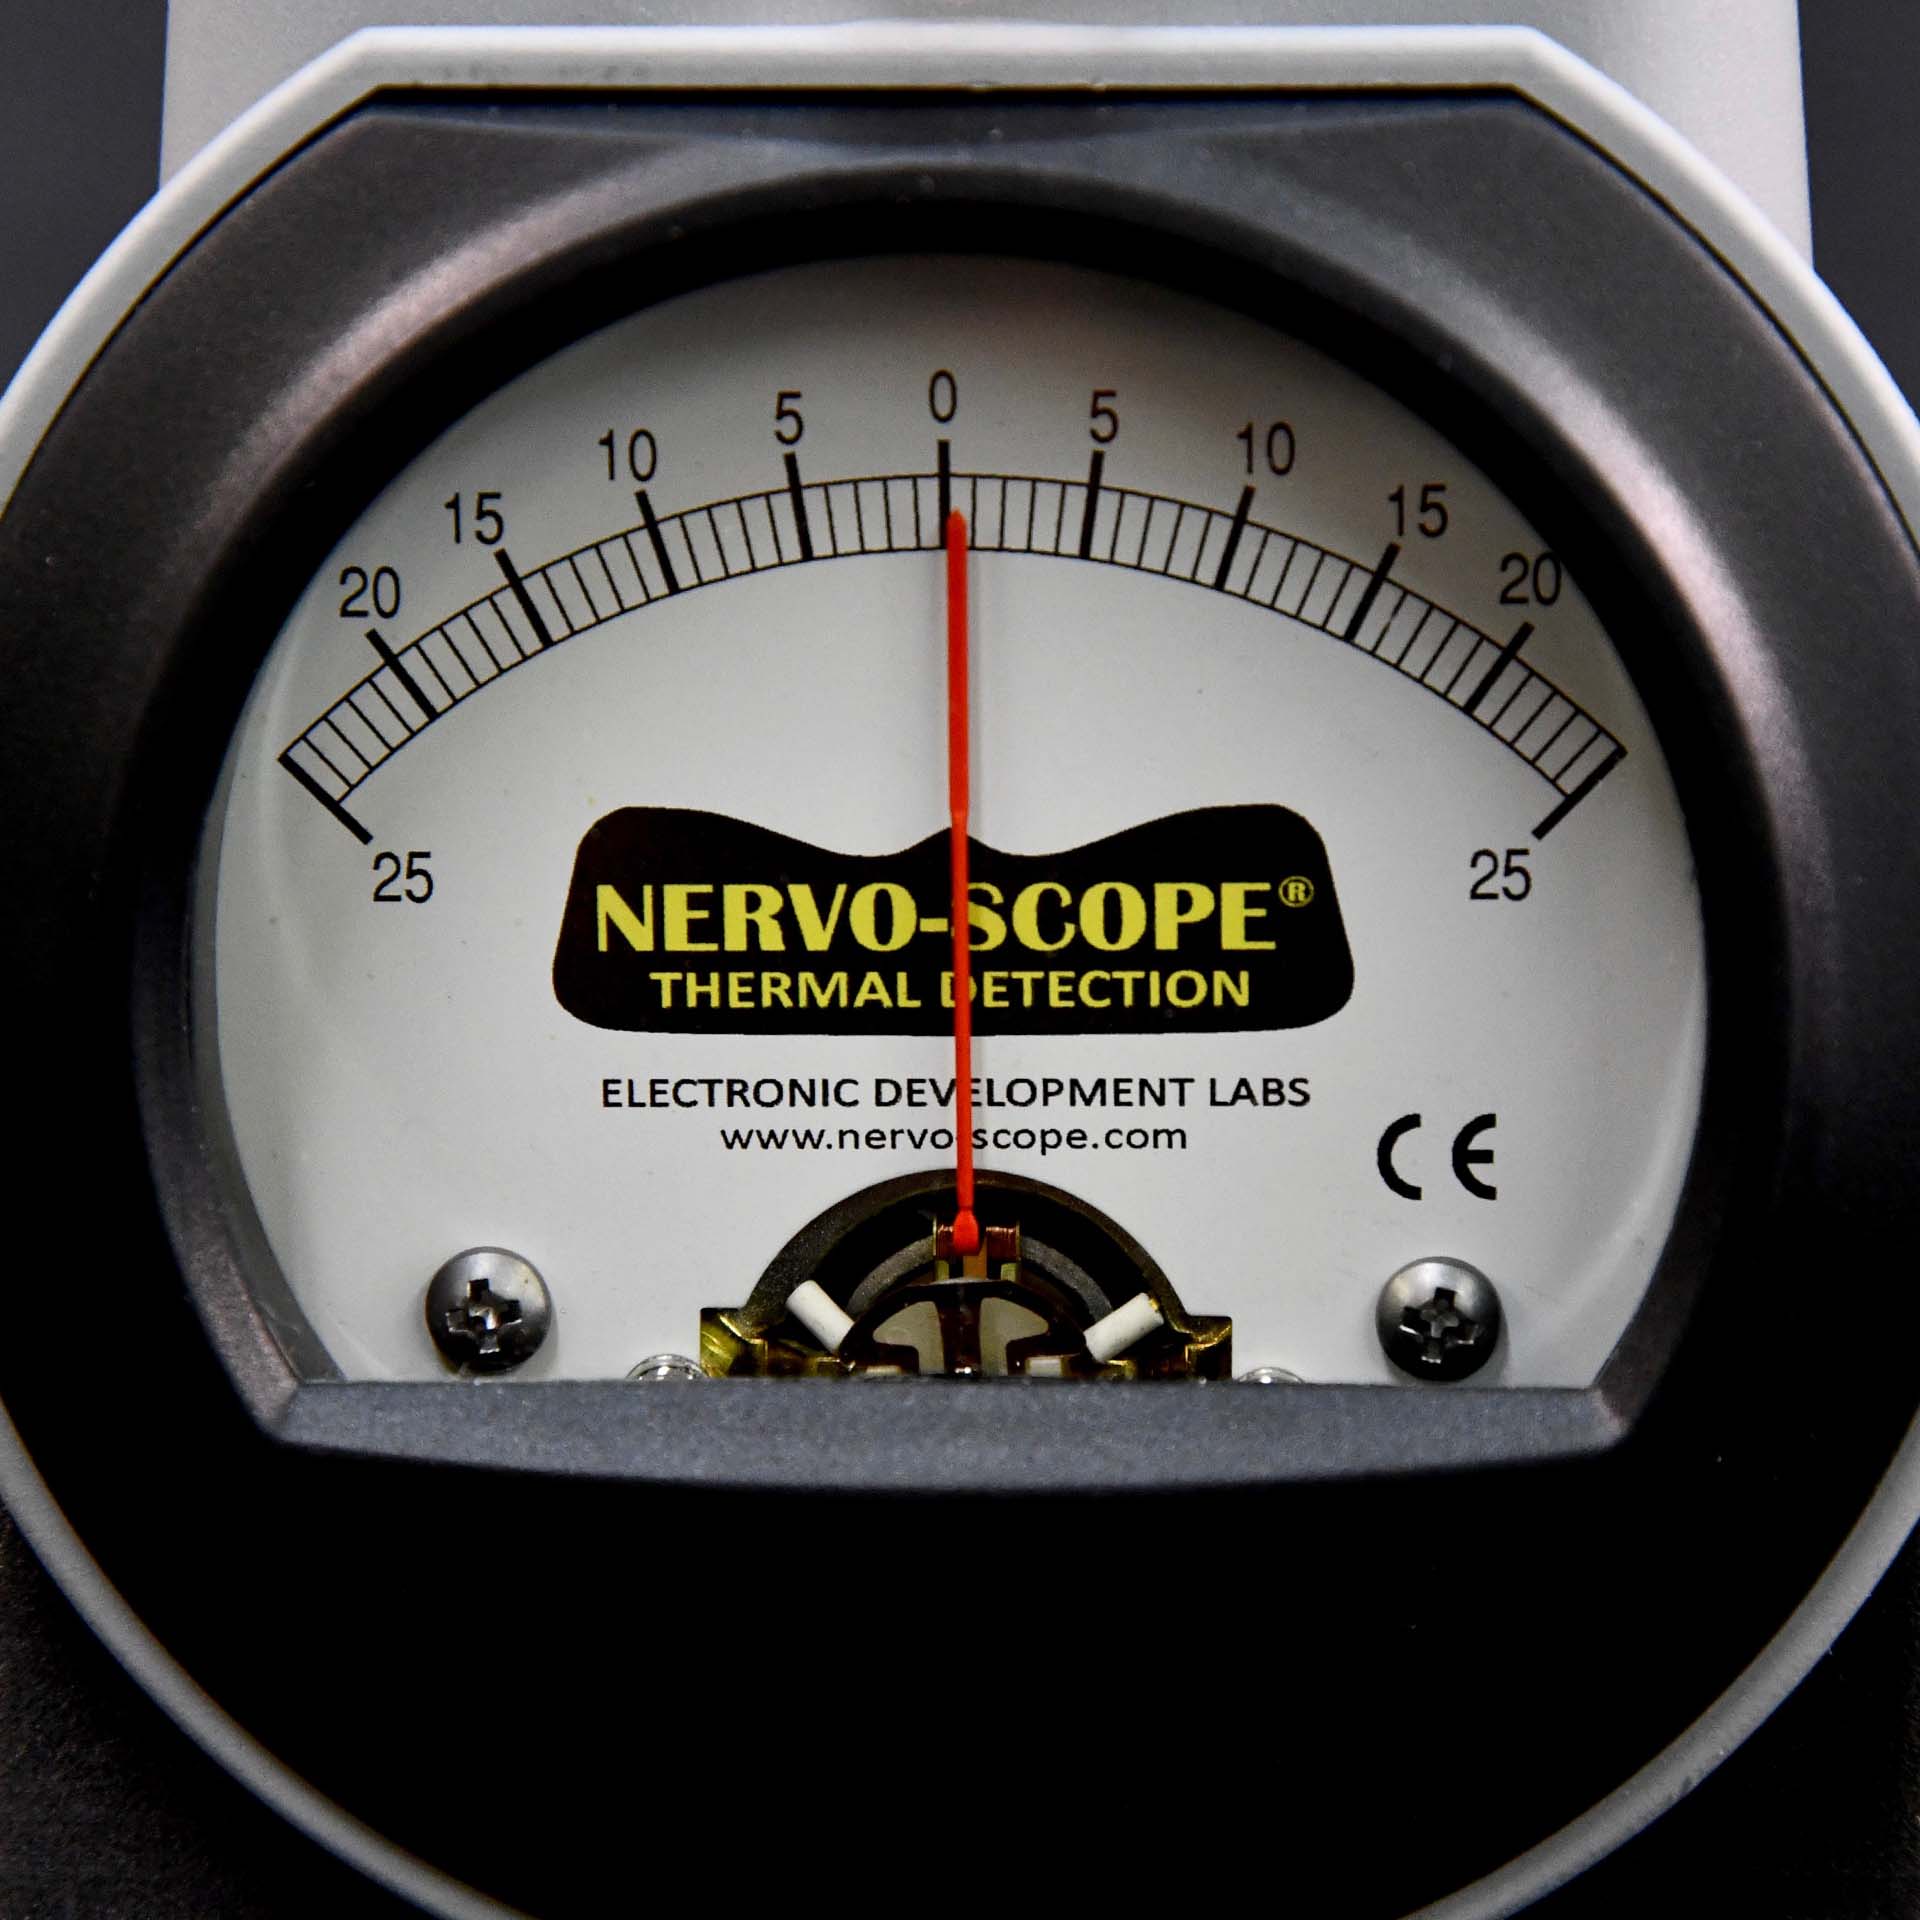 Nervo-Scope